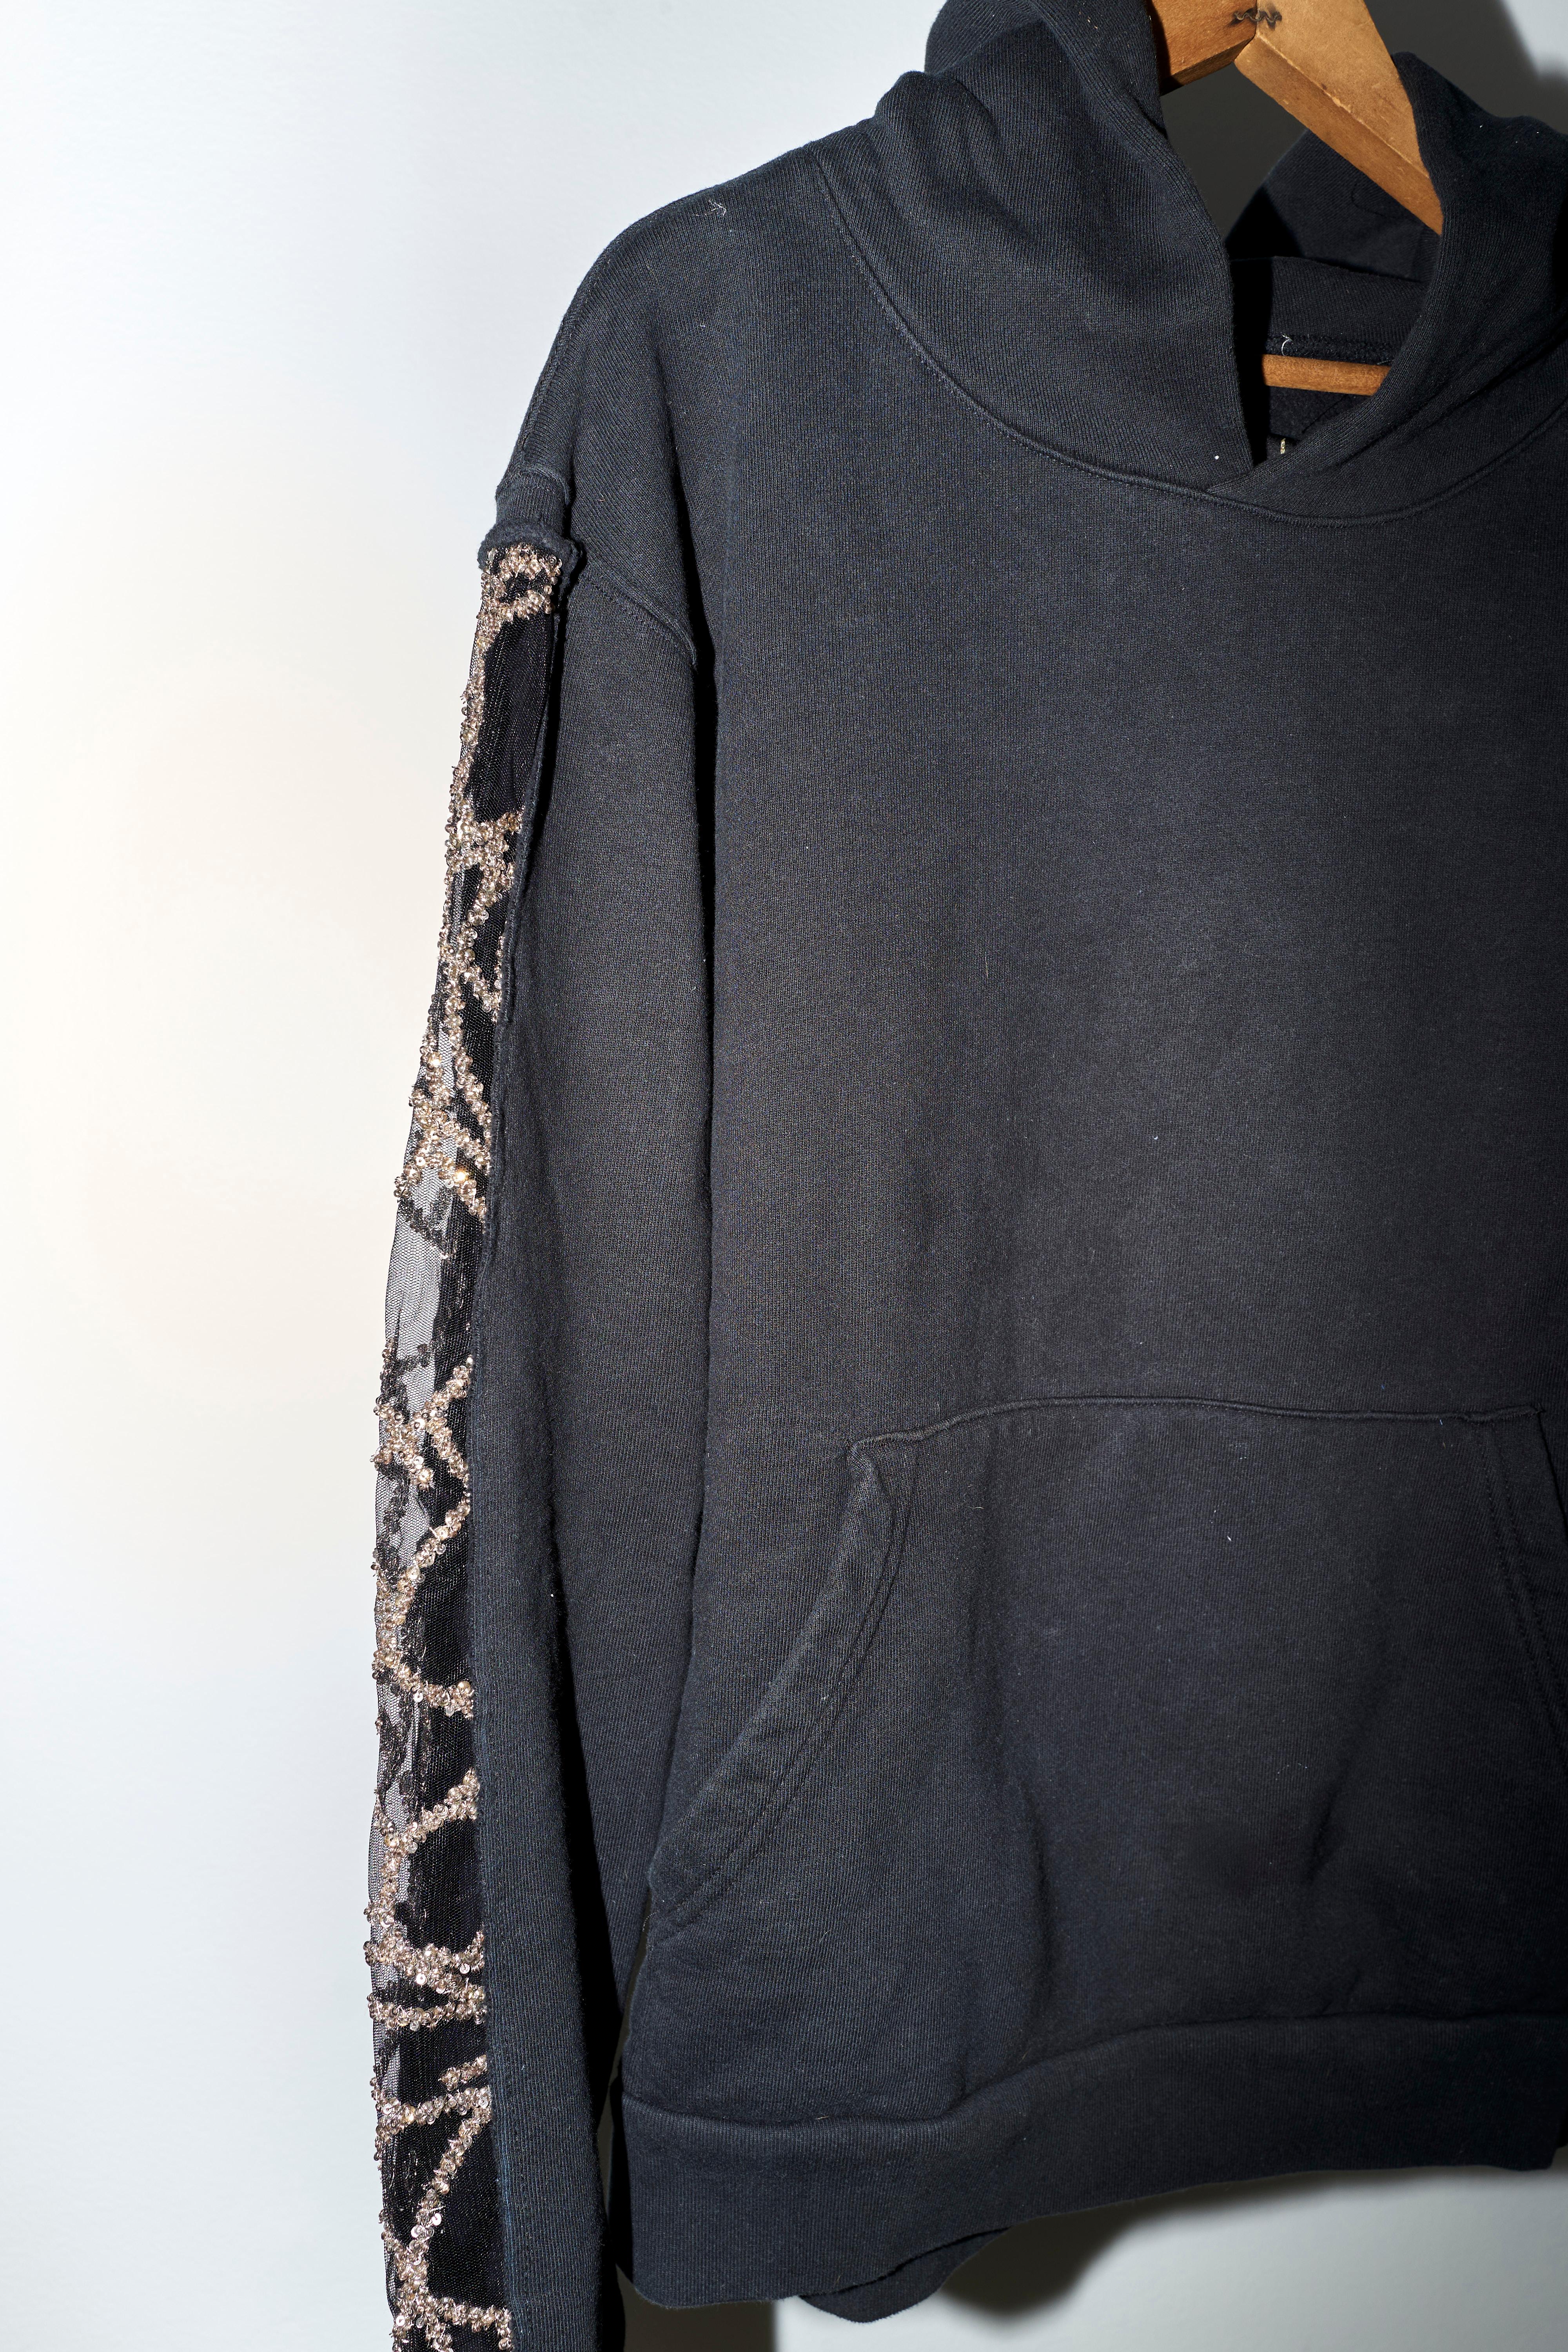 Black Hoodie Sweatshirt Transparent Sheer Mesh Chrystal Embroidery J Dauphin 4